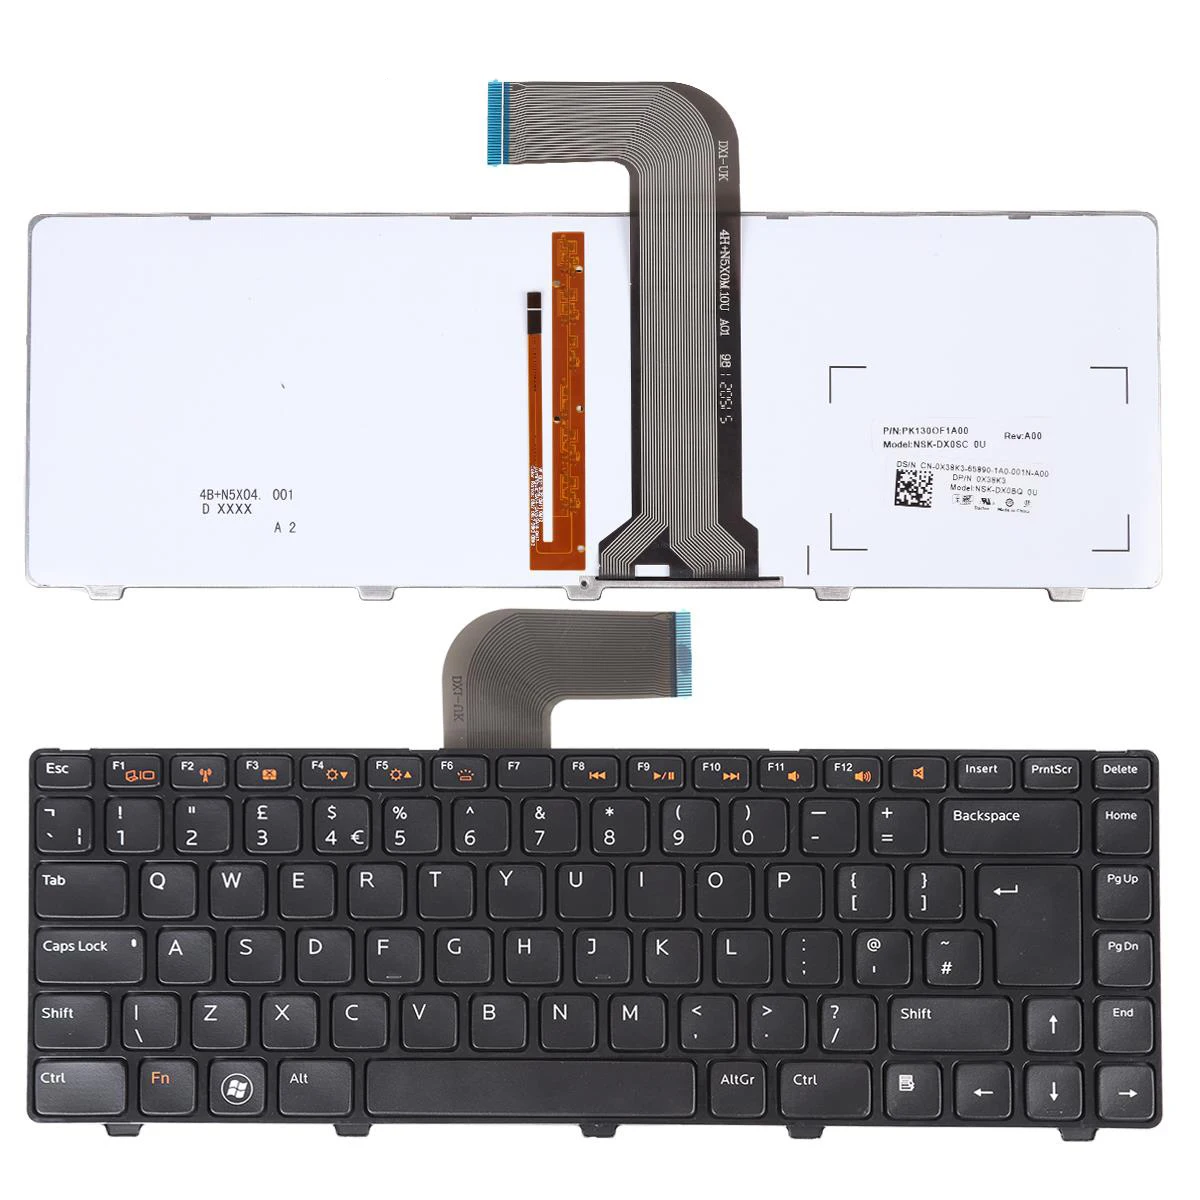 

Клавиатура для ноутбука DELL Xps 15 L502x VOSTRO 1440 1445 1450 Inspiron N4120 15R N5040 с глянцевой рамкой и черной подсветкой